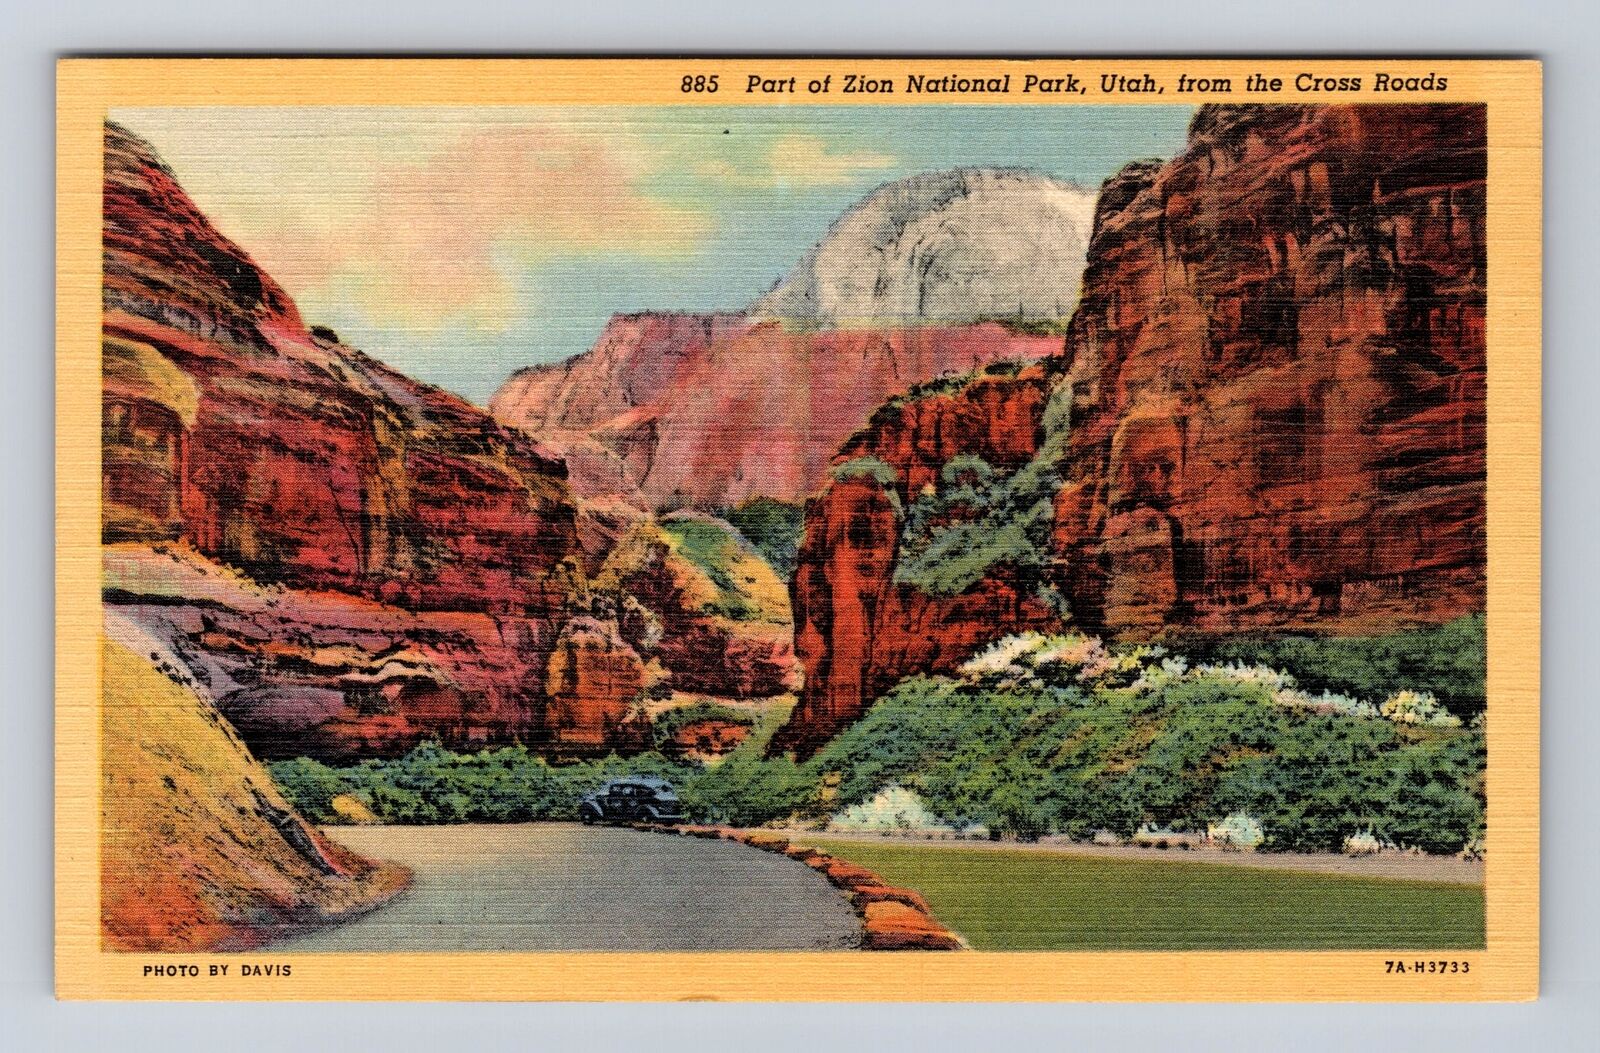 Zion National Park, Panoramic View, Series #885, Vintage Souvenir Postcard